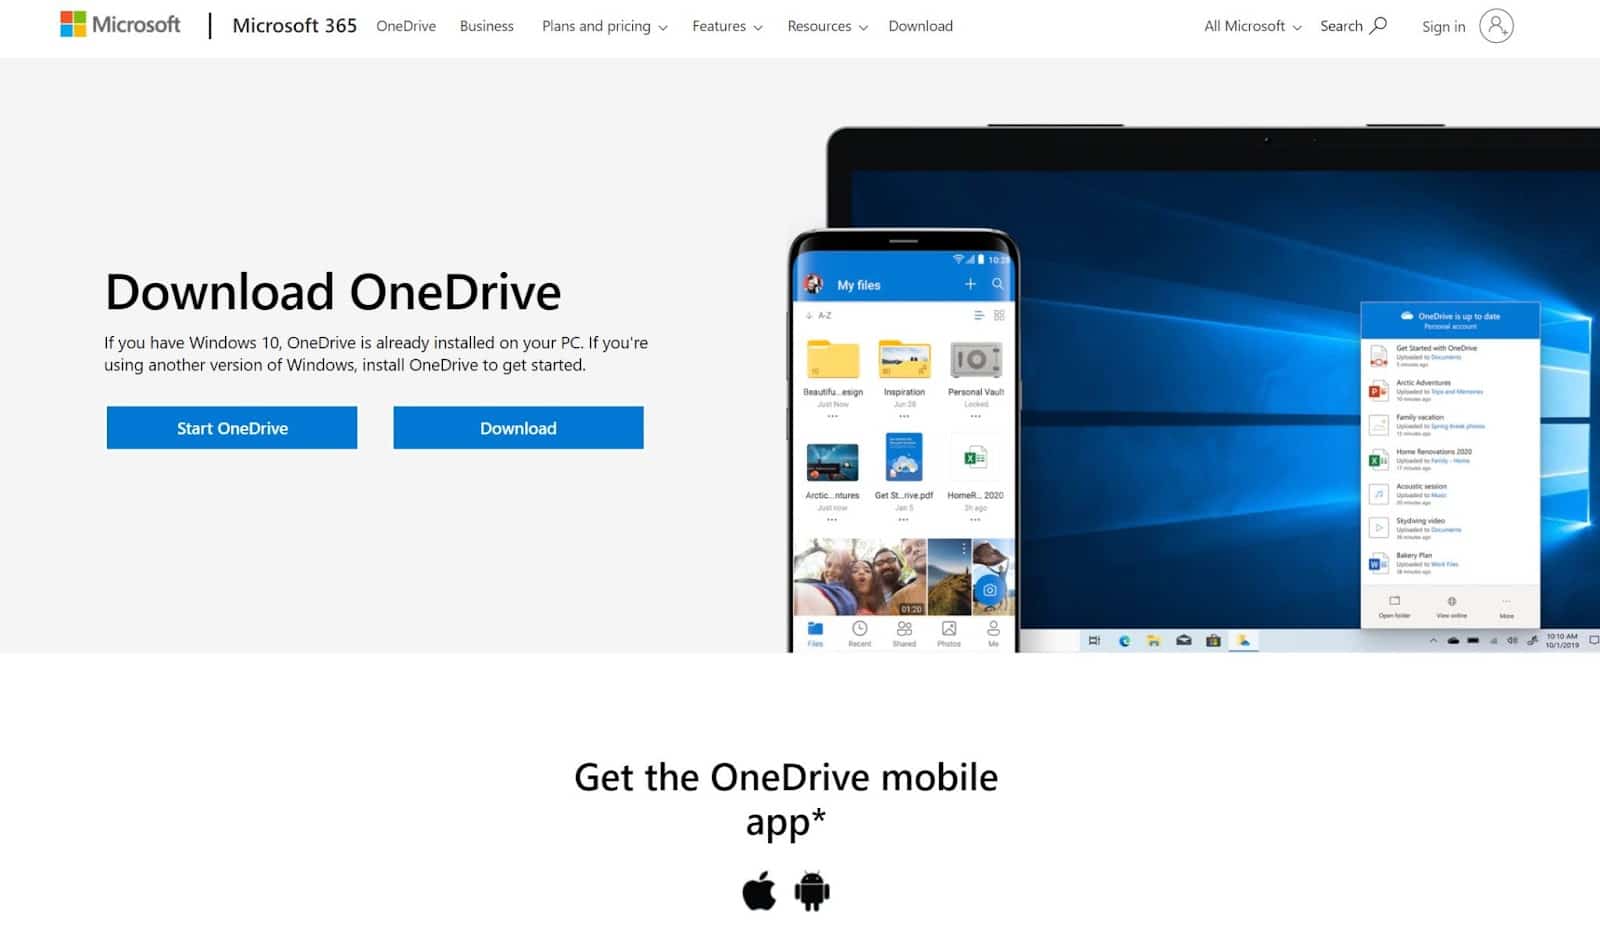 Microsoft OneDrive.